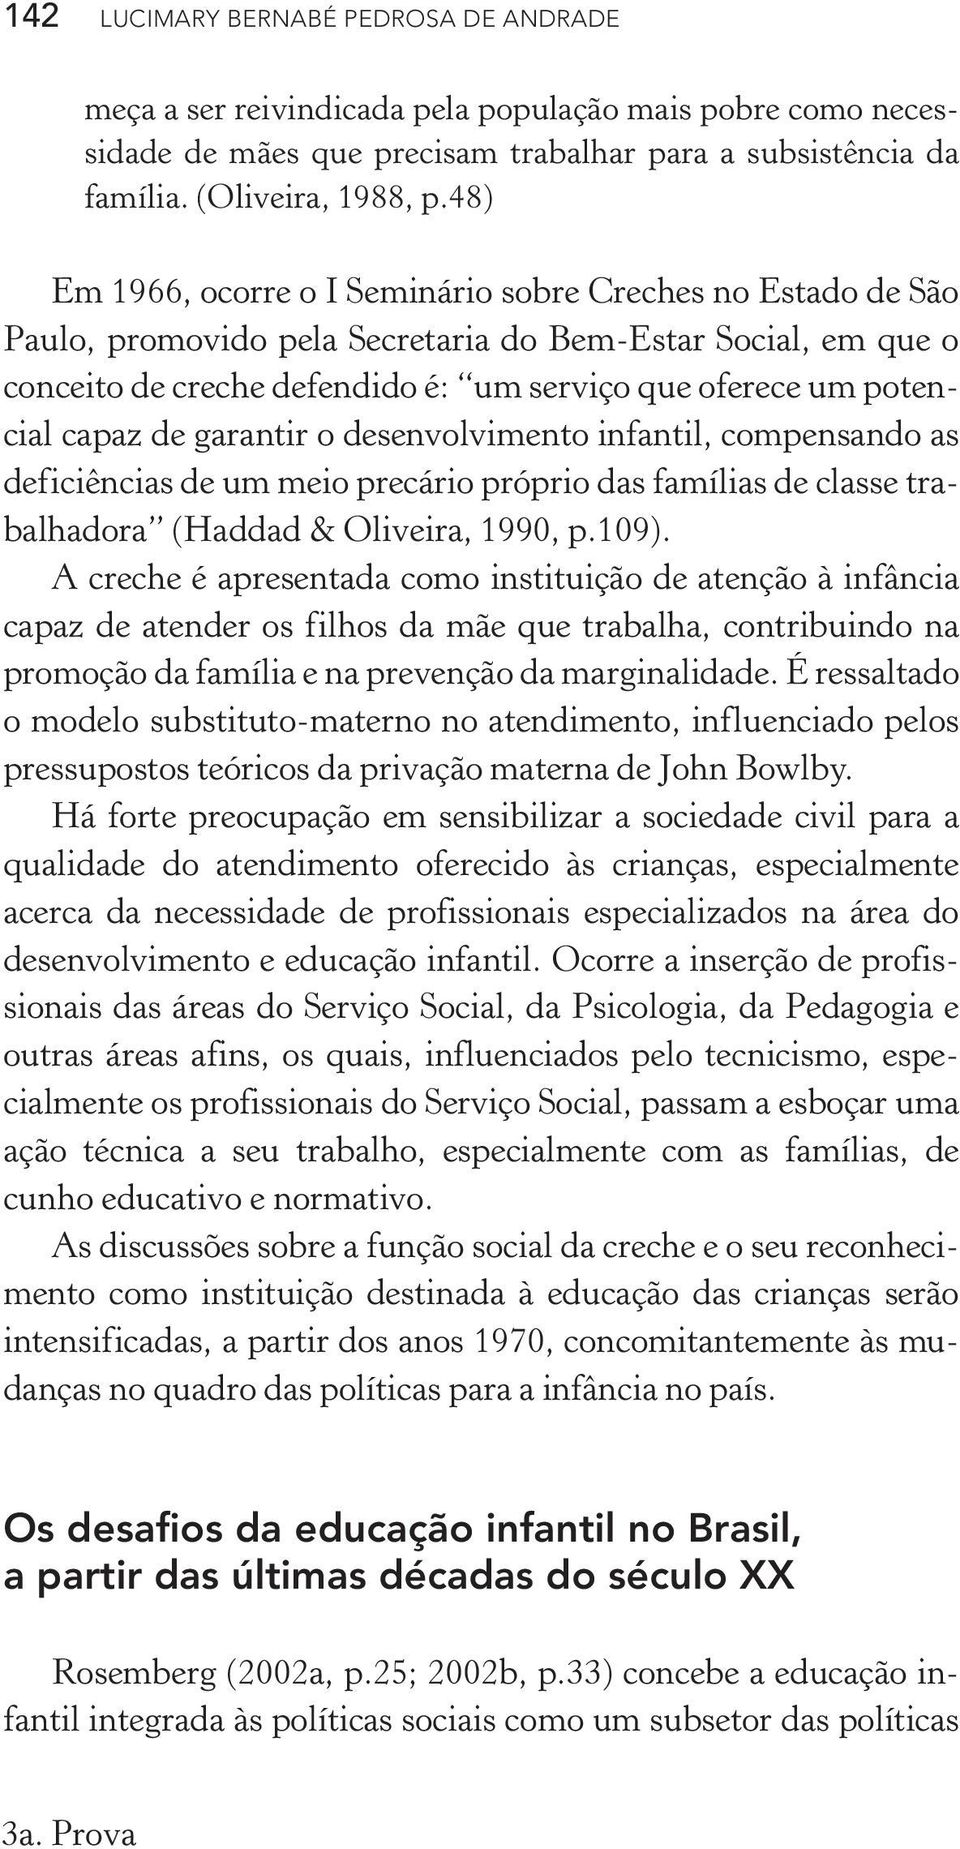 capaz de garantir o desenvolvimento infantil, compensando as deficiências de um meio precário próprio das famílias de classe trabalhadora (Haddad & Oliveira, 1990, p.109).